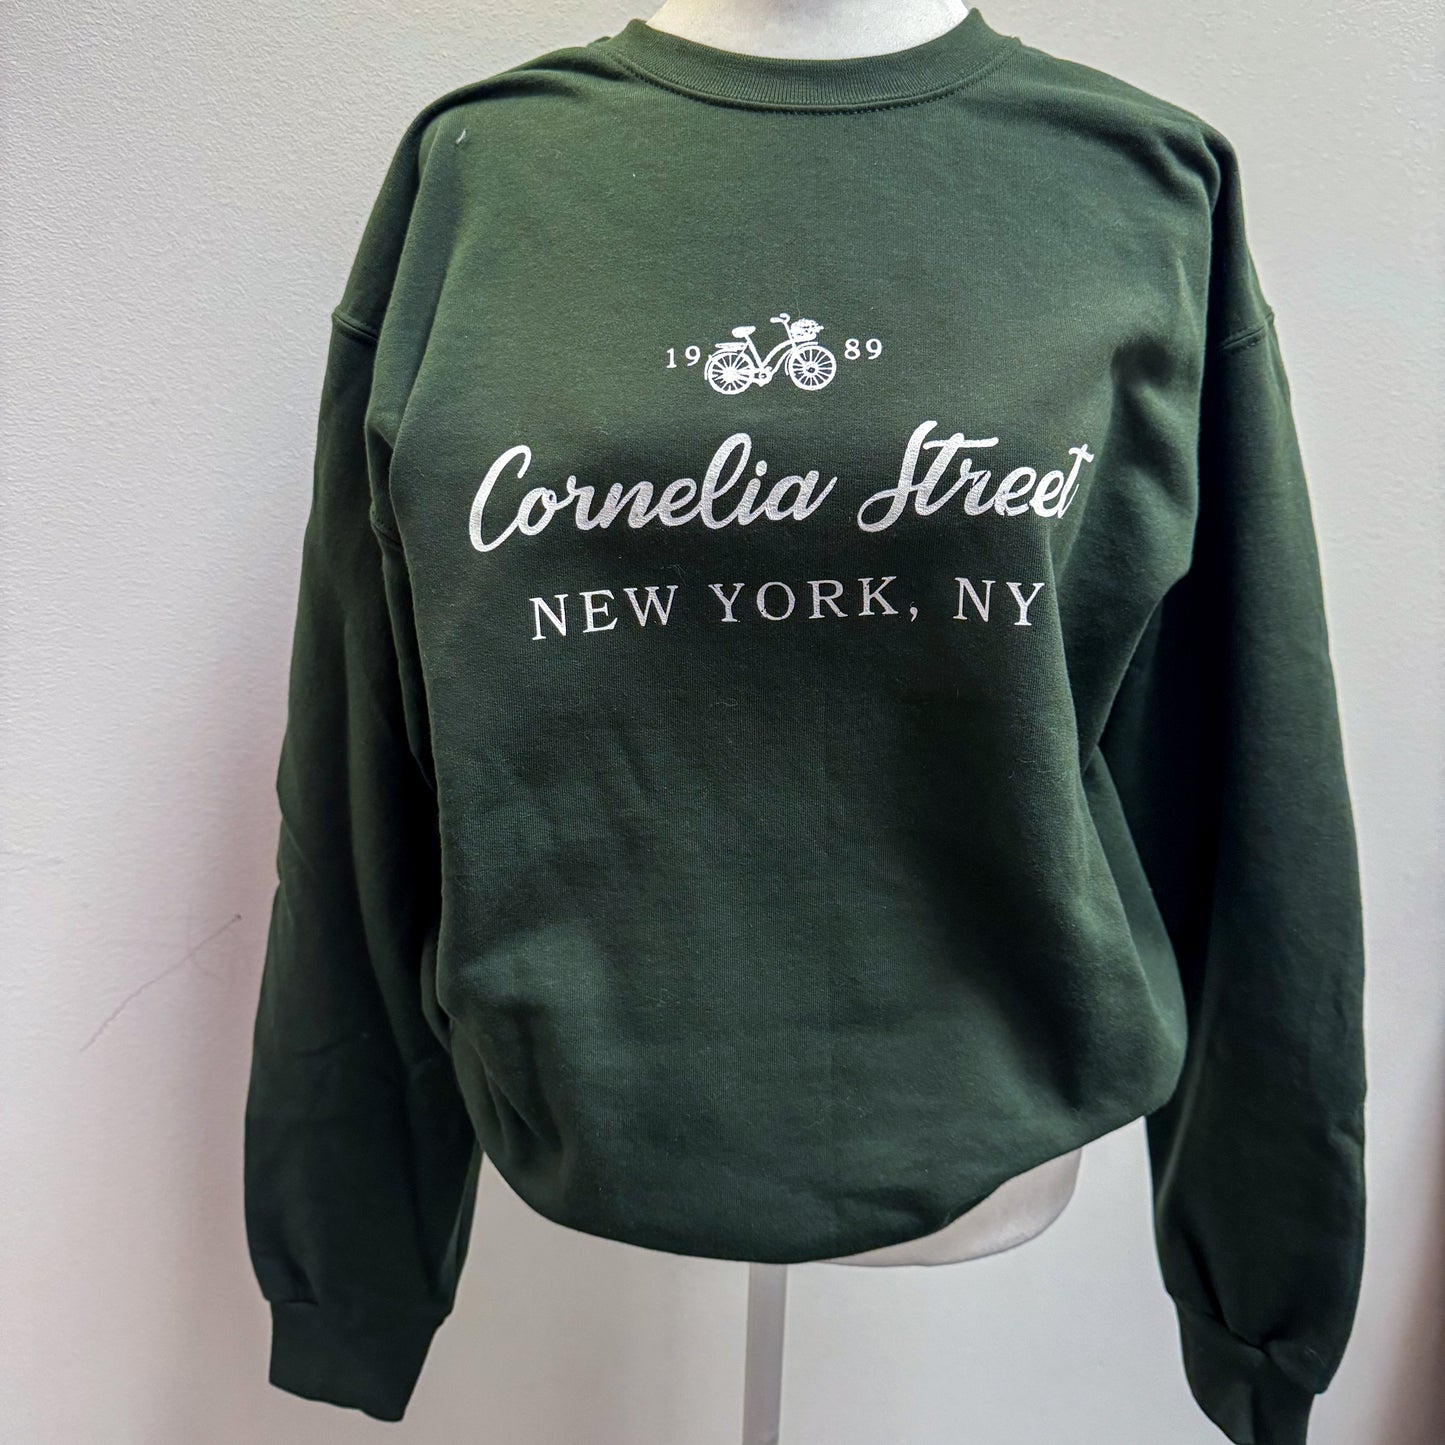 Cornelia street sweatshirt